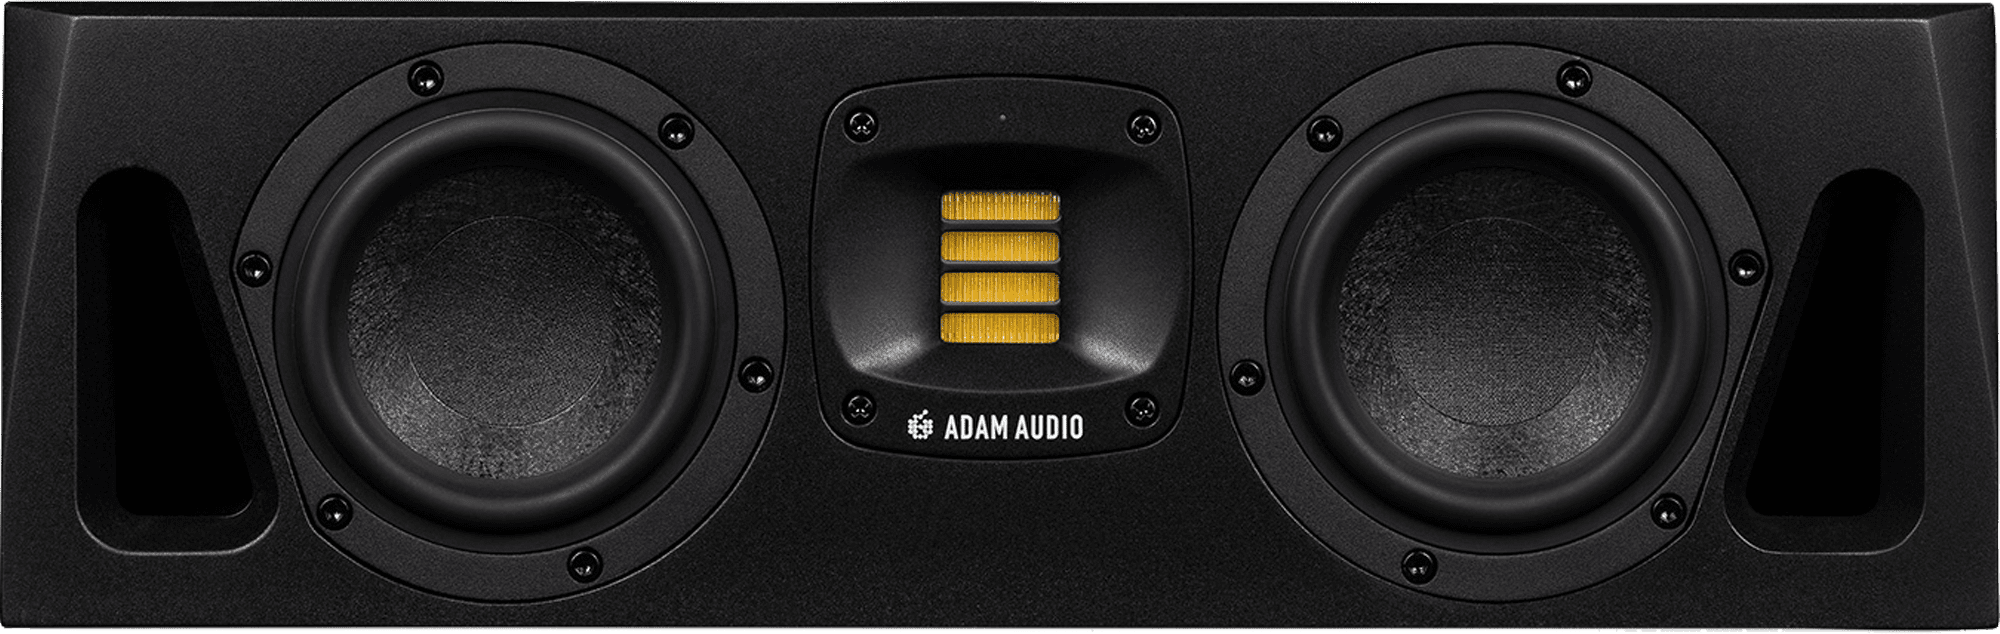 Adam Audio A44H Frontalansicht.